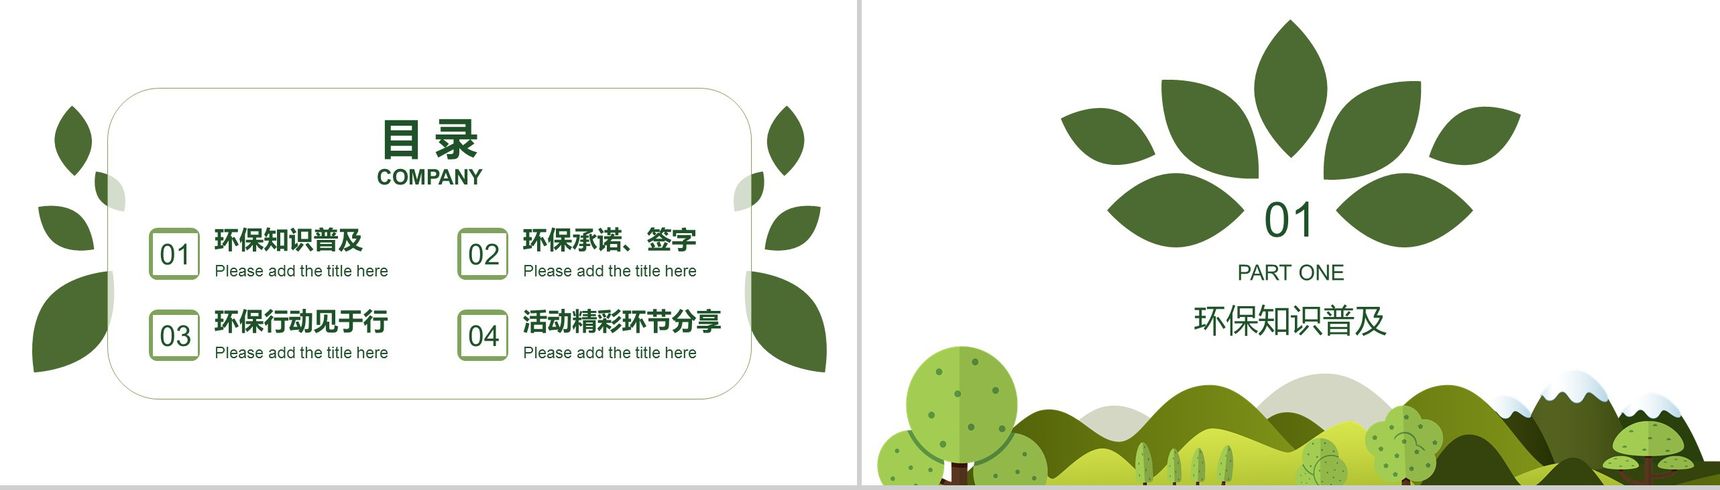 创意手绘简约植树节绿色环保宣传PPT模板-2